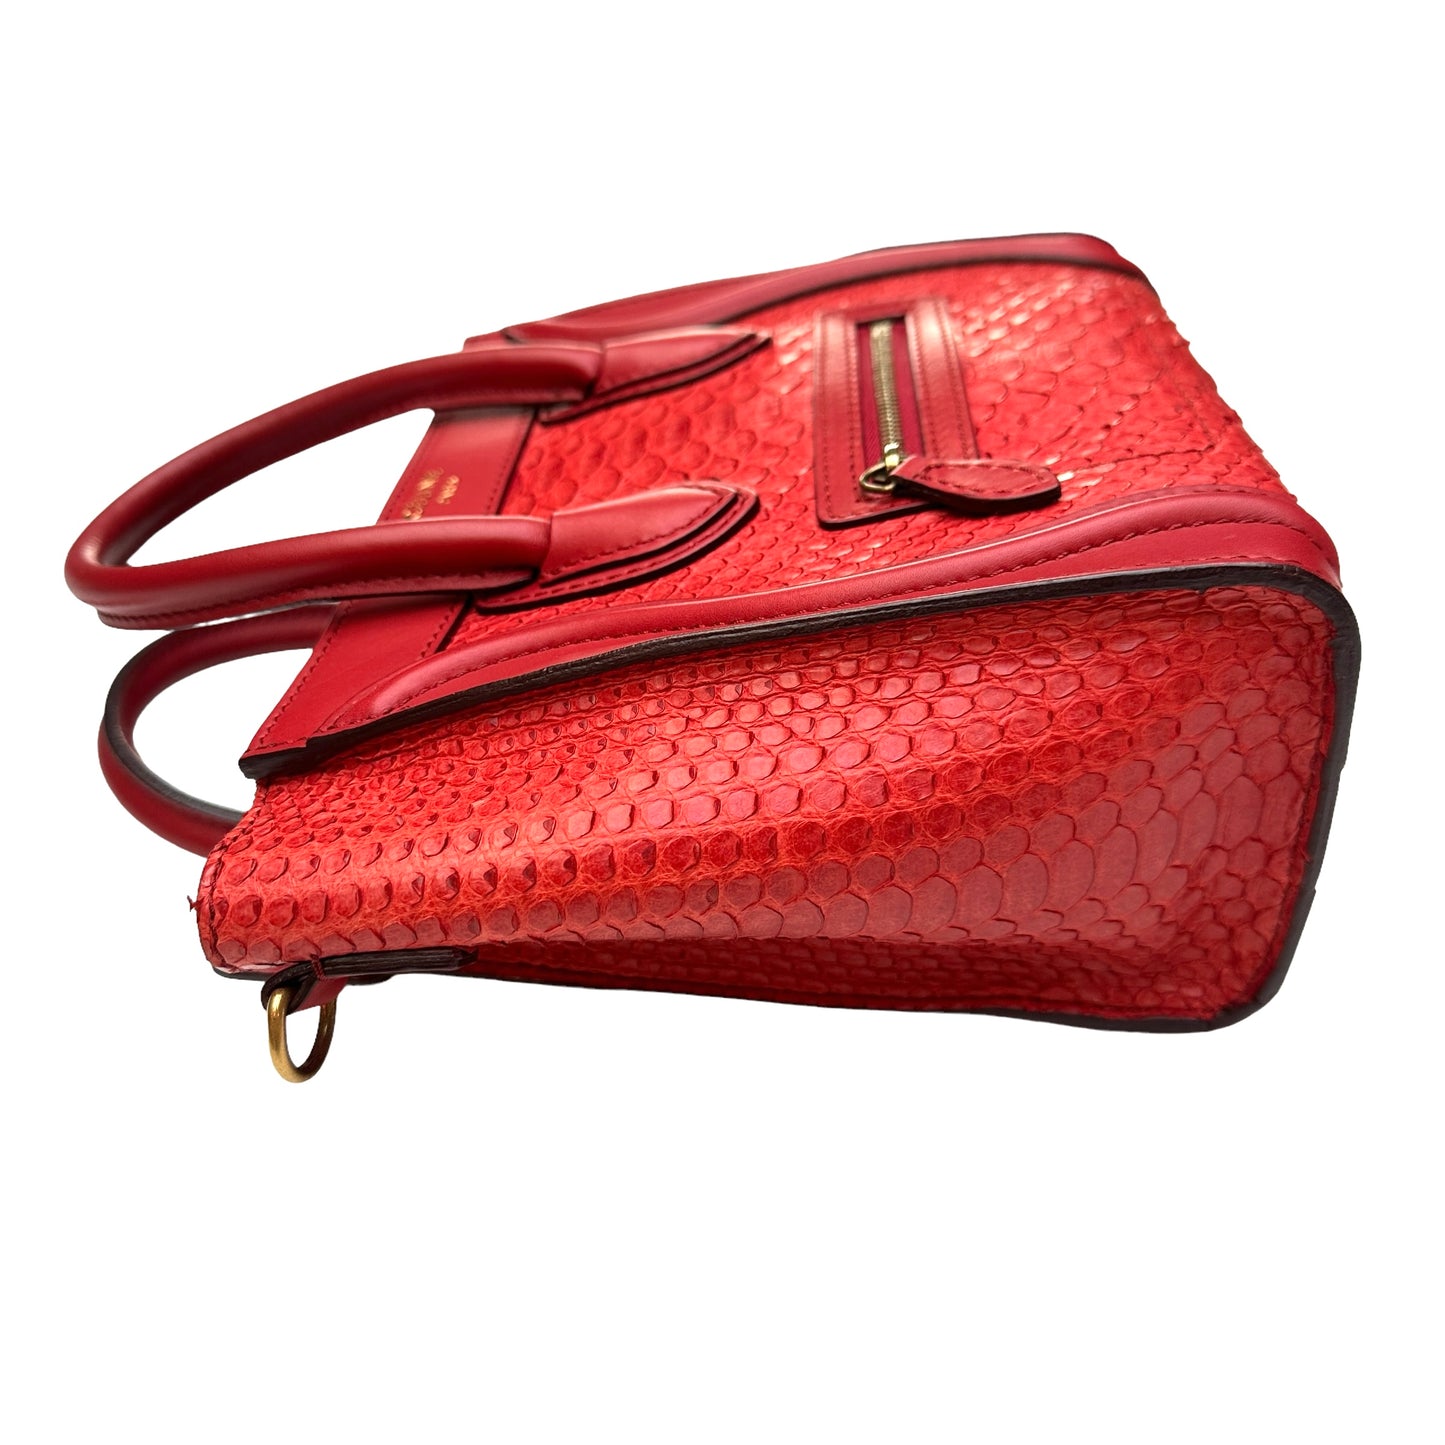 Nano Red Python Luggage Bag